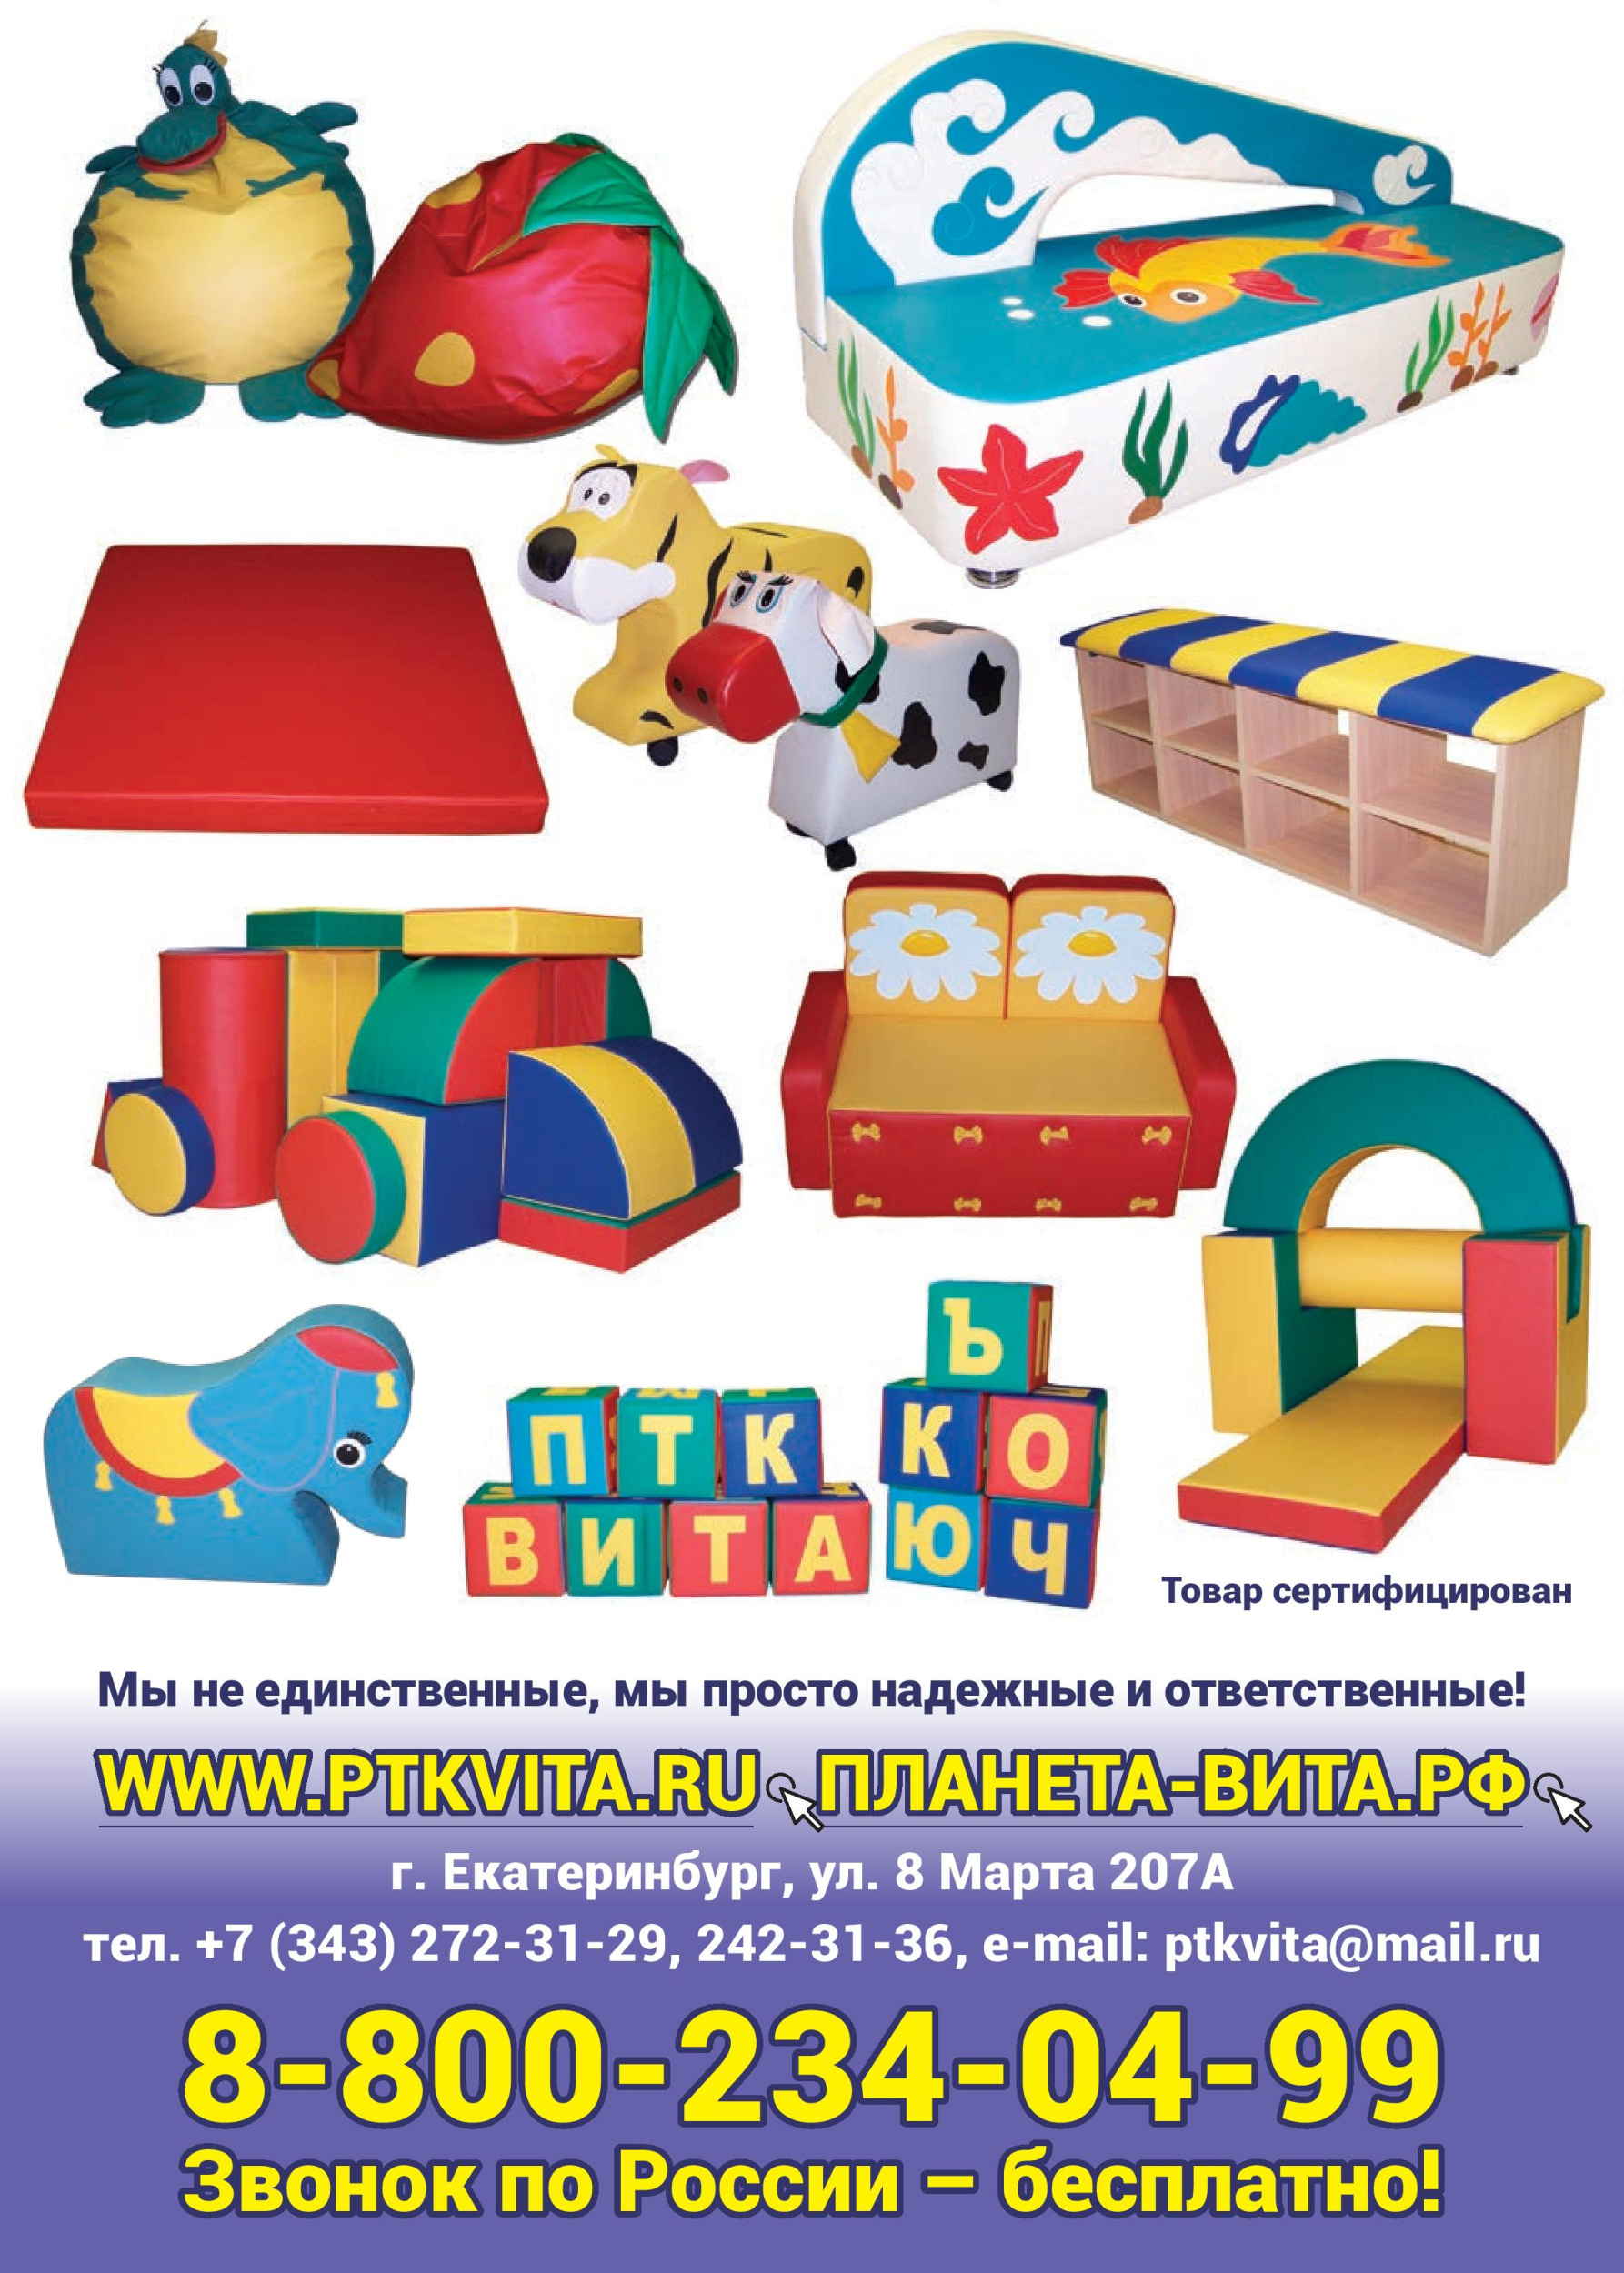 Российский производитель детской игровой мебели и оборудования с 2004 года